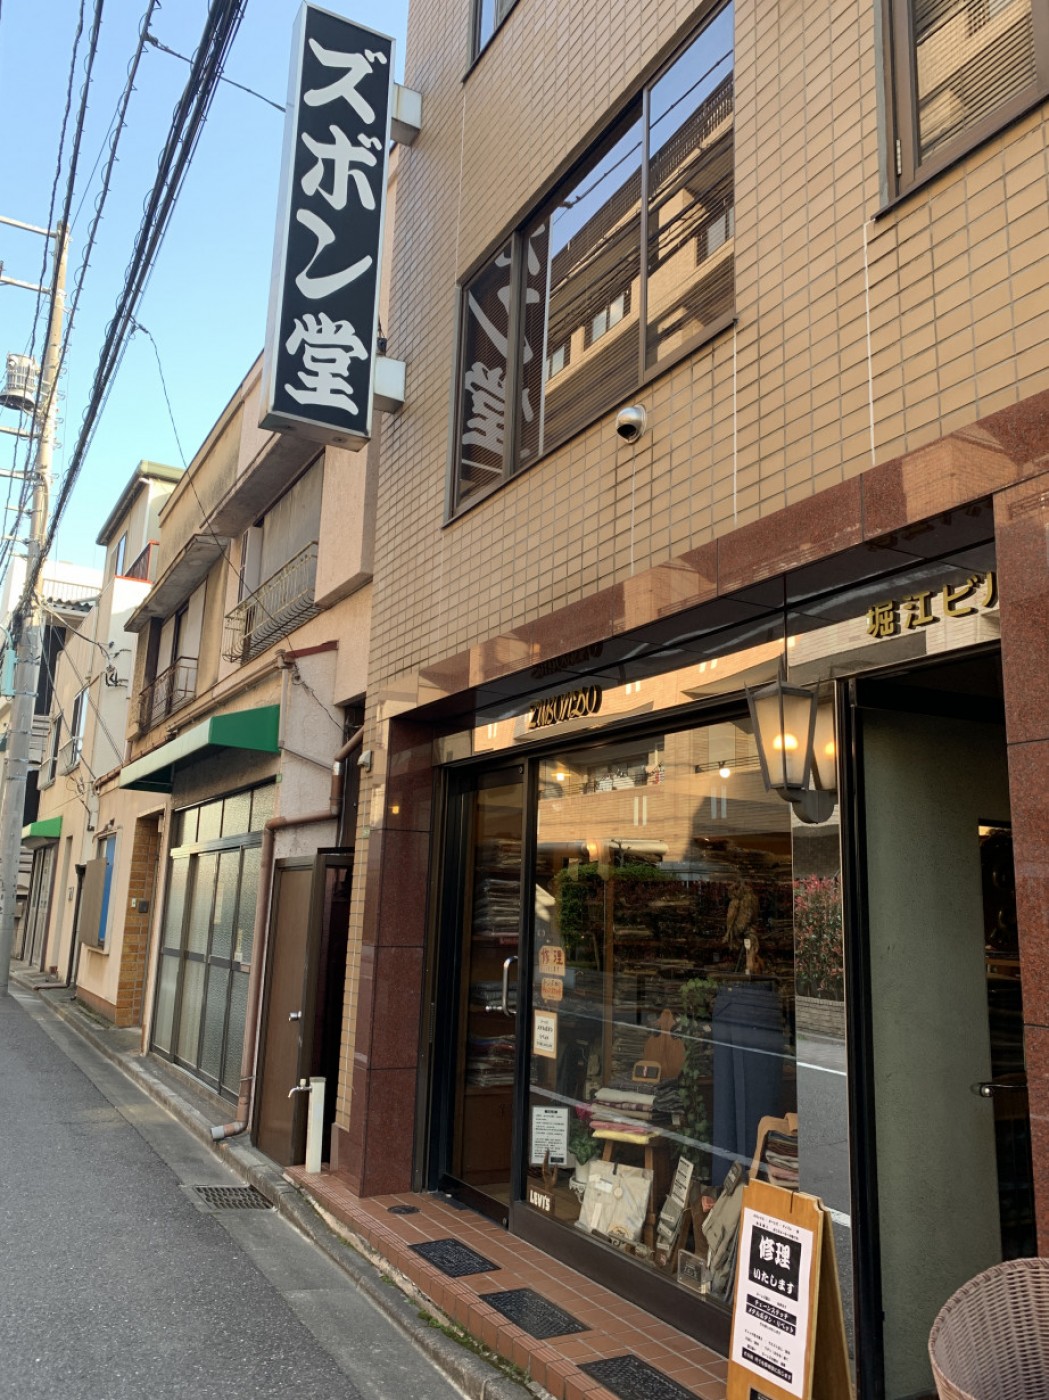 本郷の菊坂沿いにある「ズボン堂」。修理も得意としている。